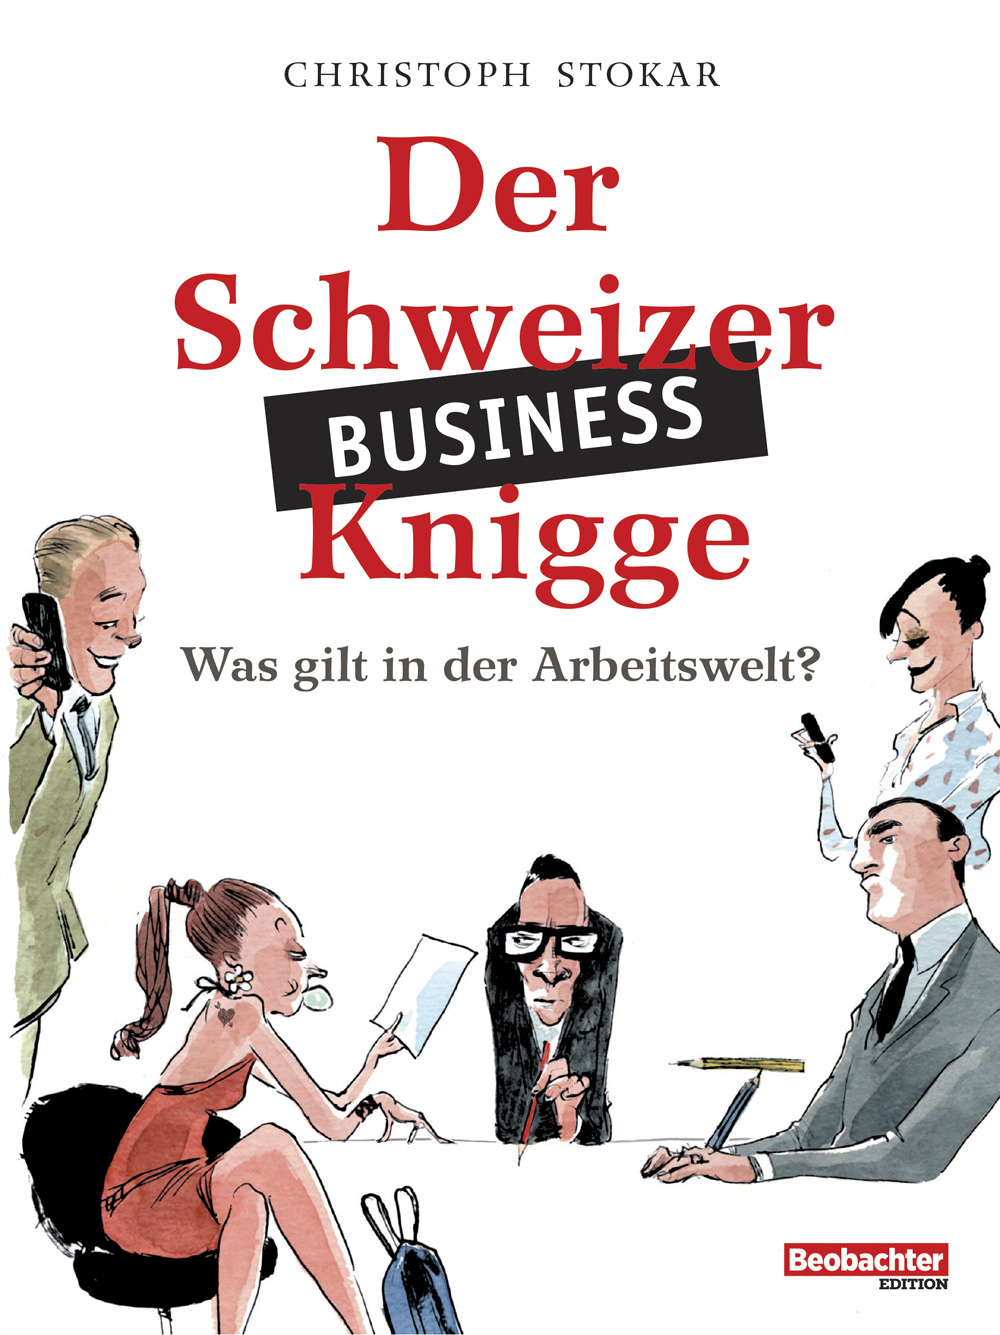 Der Schweizer Business-Knigge, Beobachter Edition, Umschlag